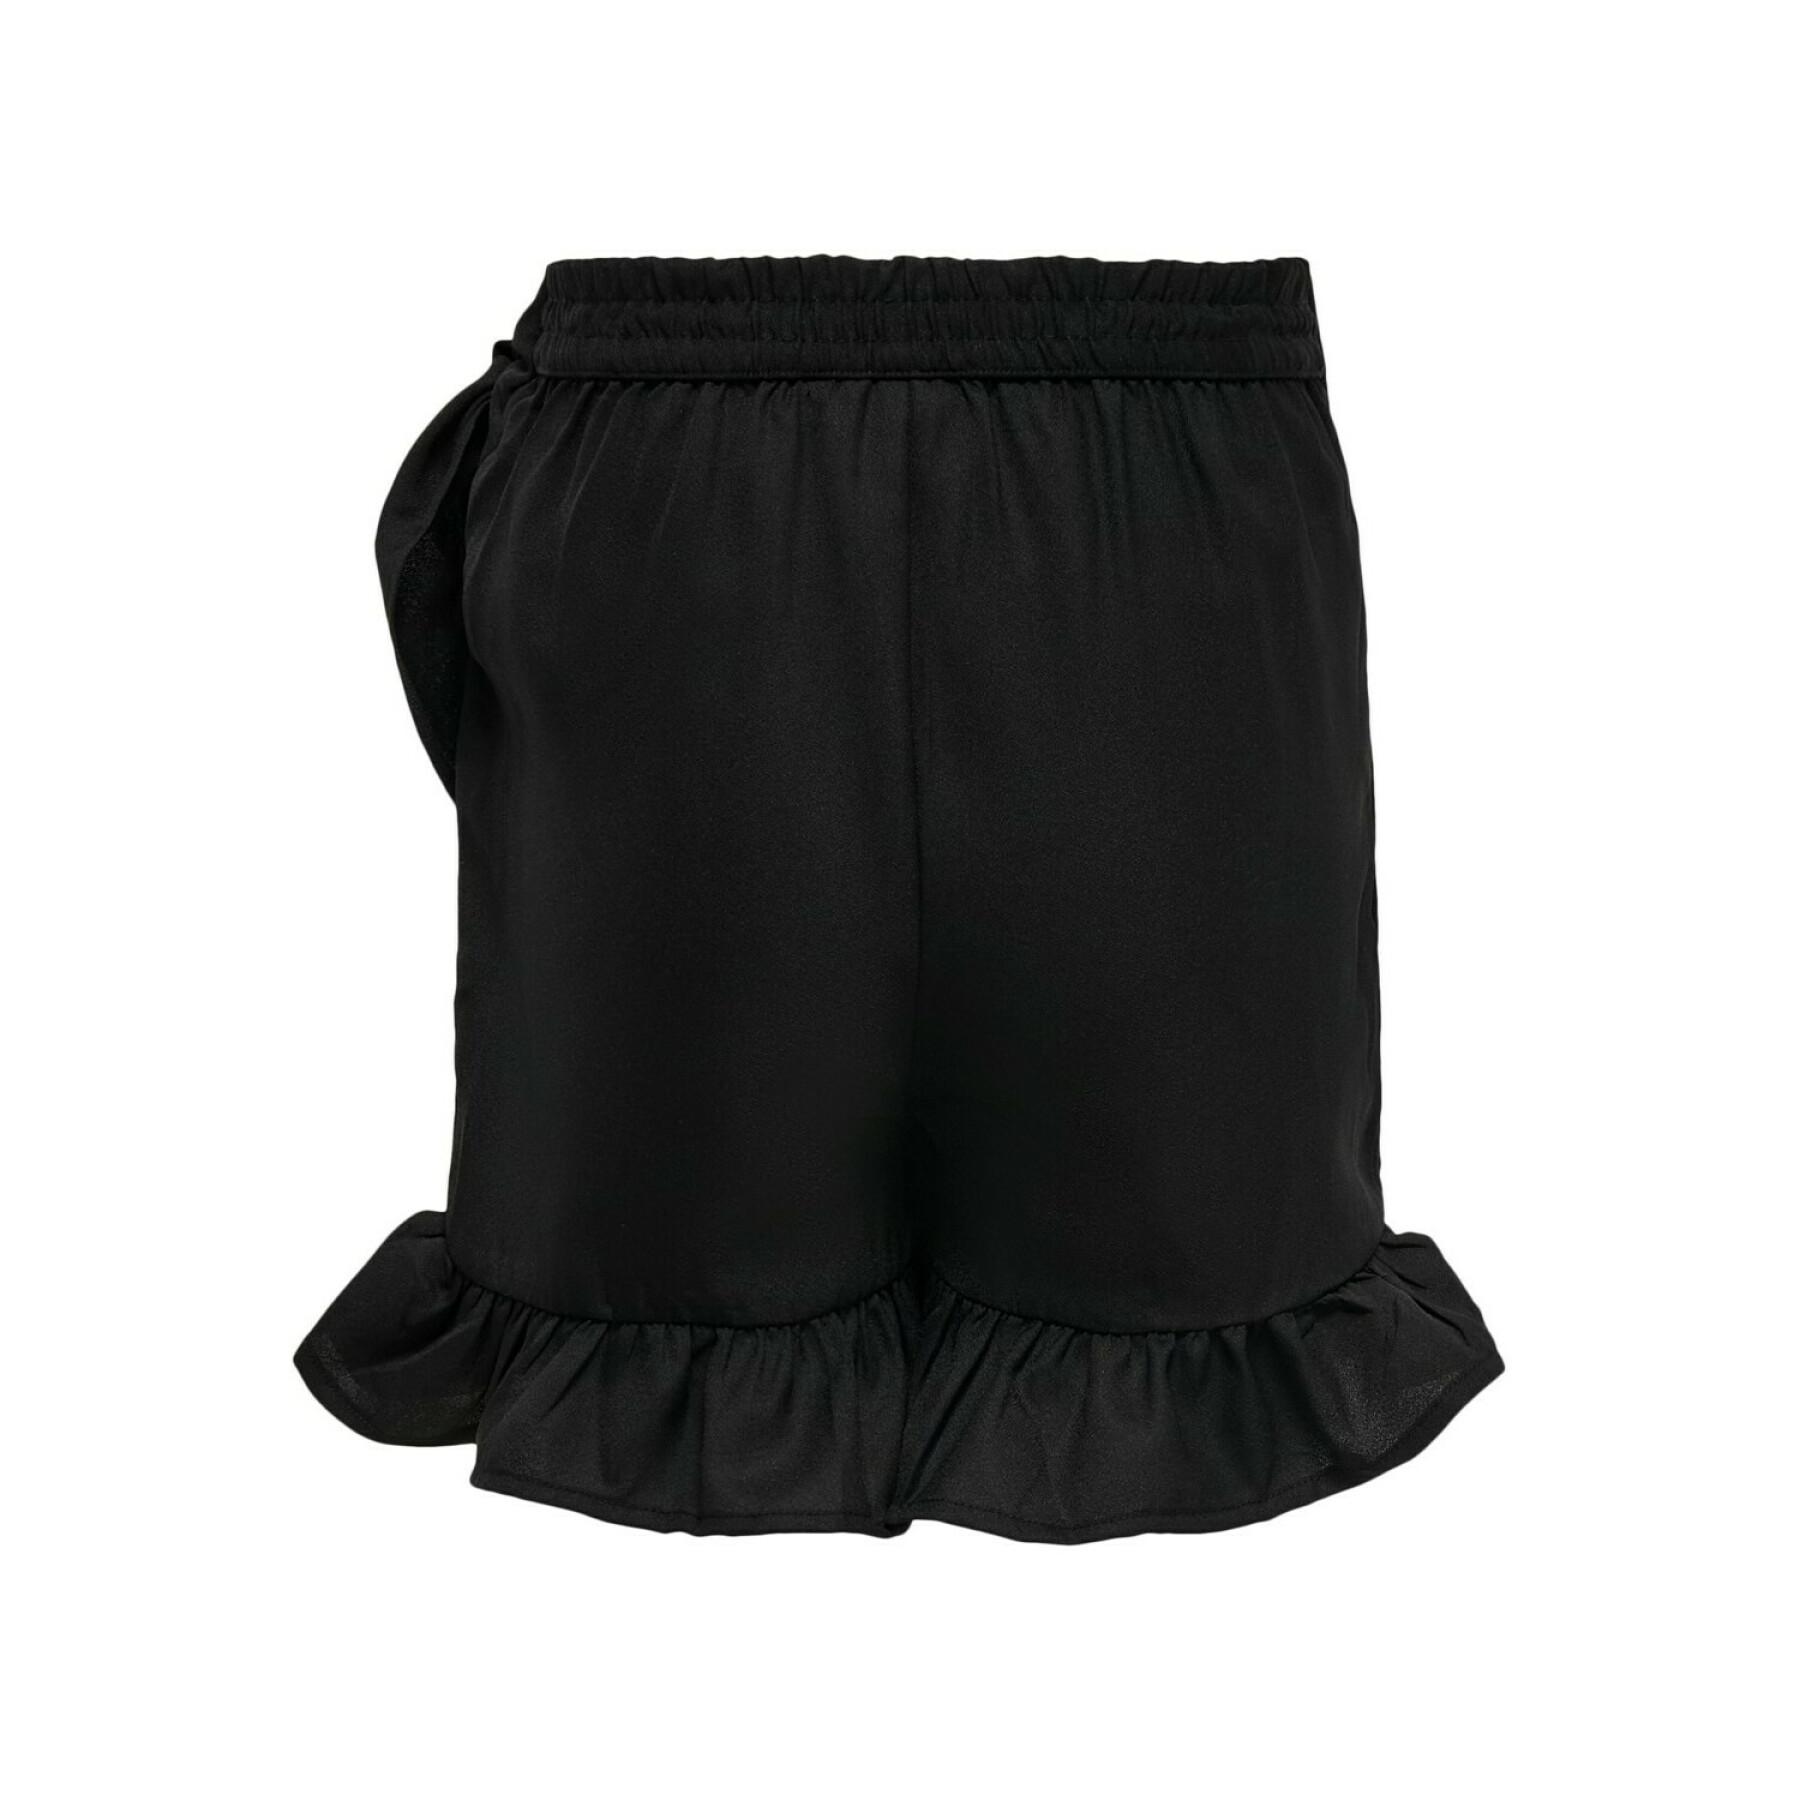 Girl's skirt-short Only kids konlino fake wrap